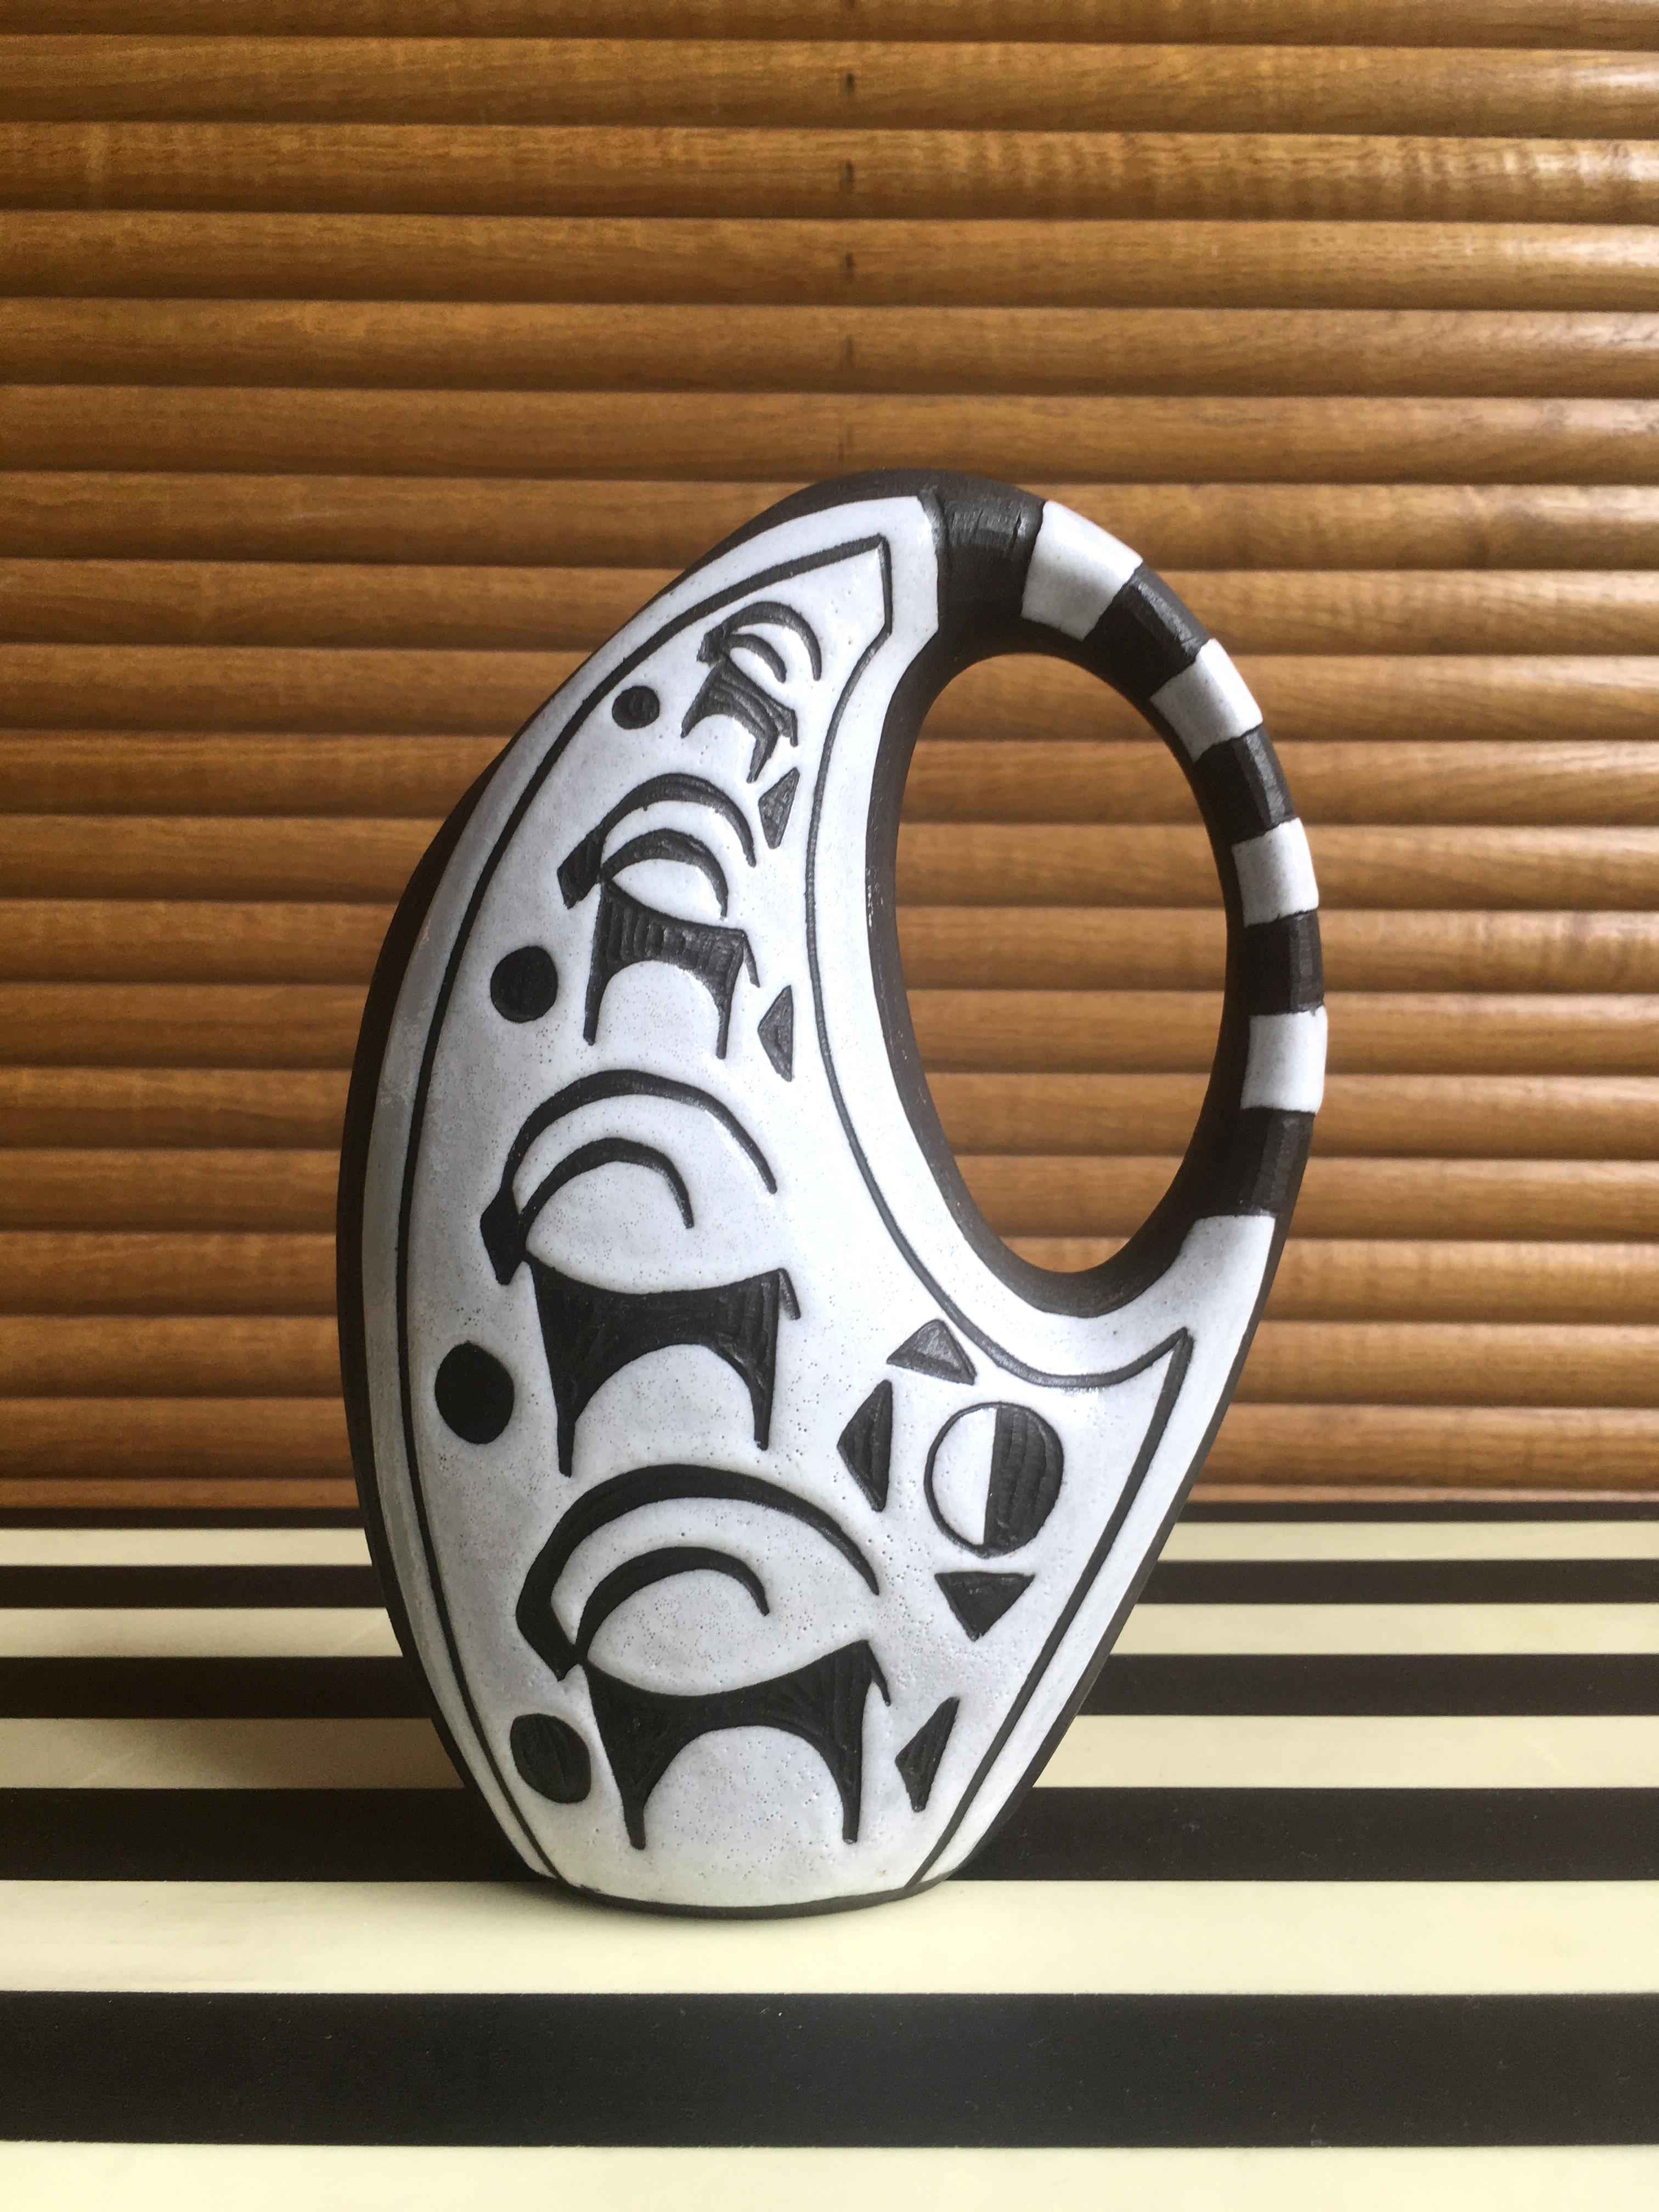 Magnifique vase pichet en céramique moderniste danoise fait à la main, de la série Tribal de l'artiste céramiste Marianne Starck (1931-2007). Formes arrondies et lisses avec poignée rayée. Émail blanc avec décor d'animaux stylisés sculpté à la main